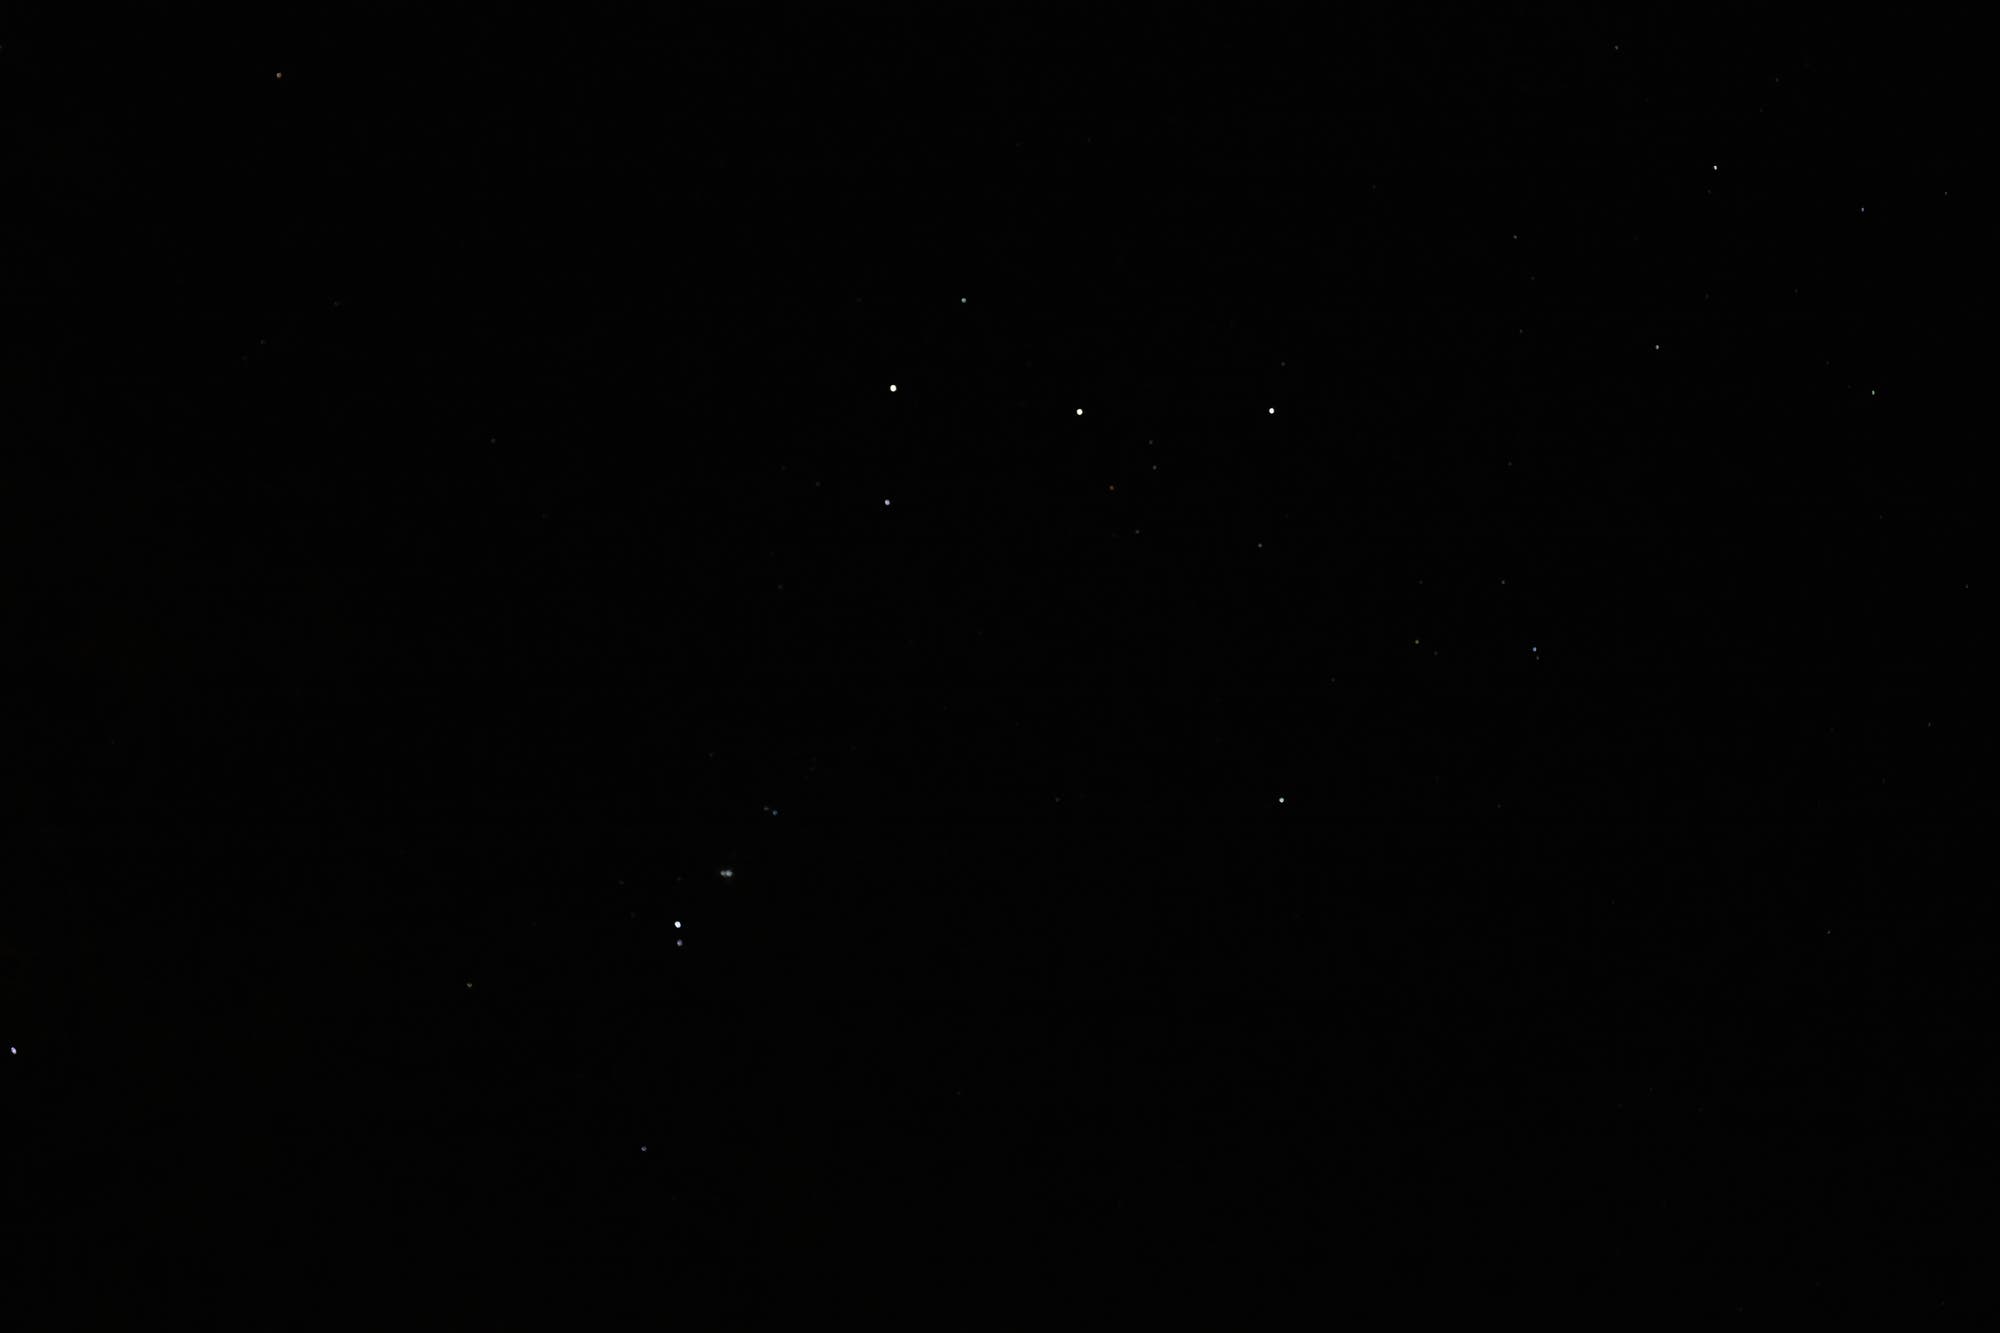 Sternbild Orion aus der Hand fotografiert